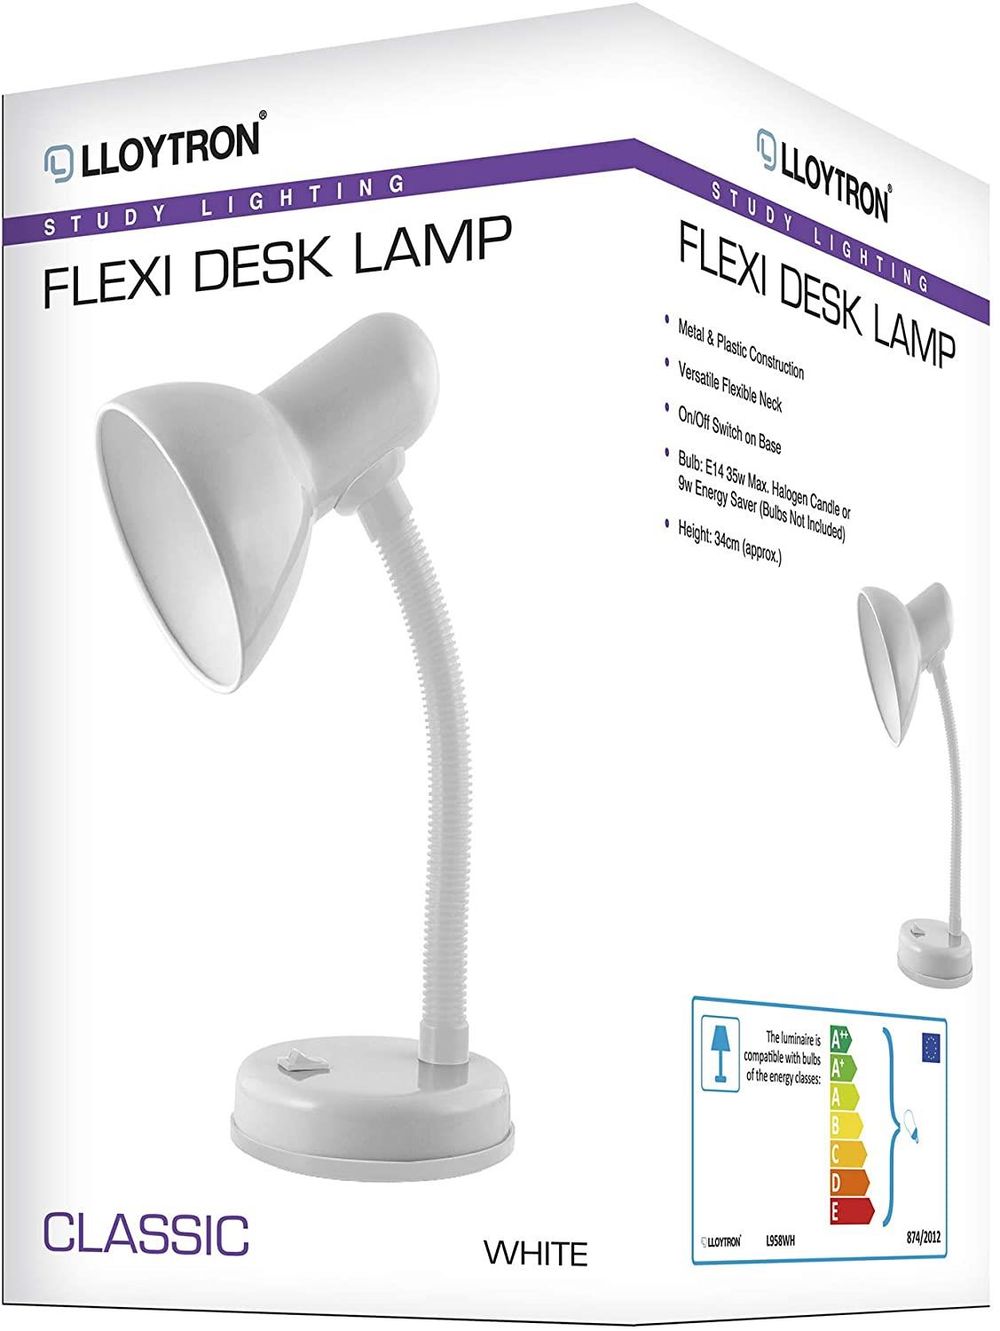 Lloytron Flexi Desk Lamp White Deco Home Office Lighting